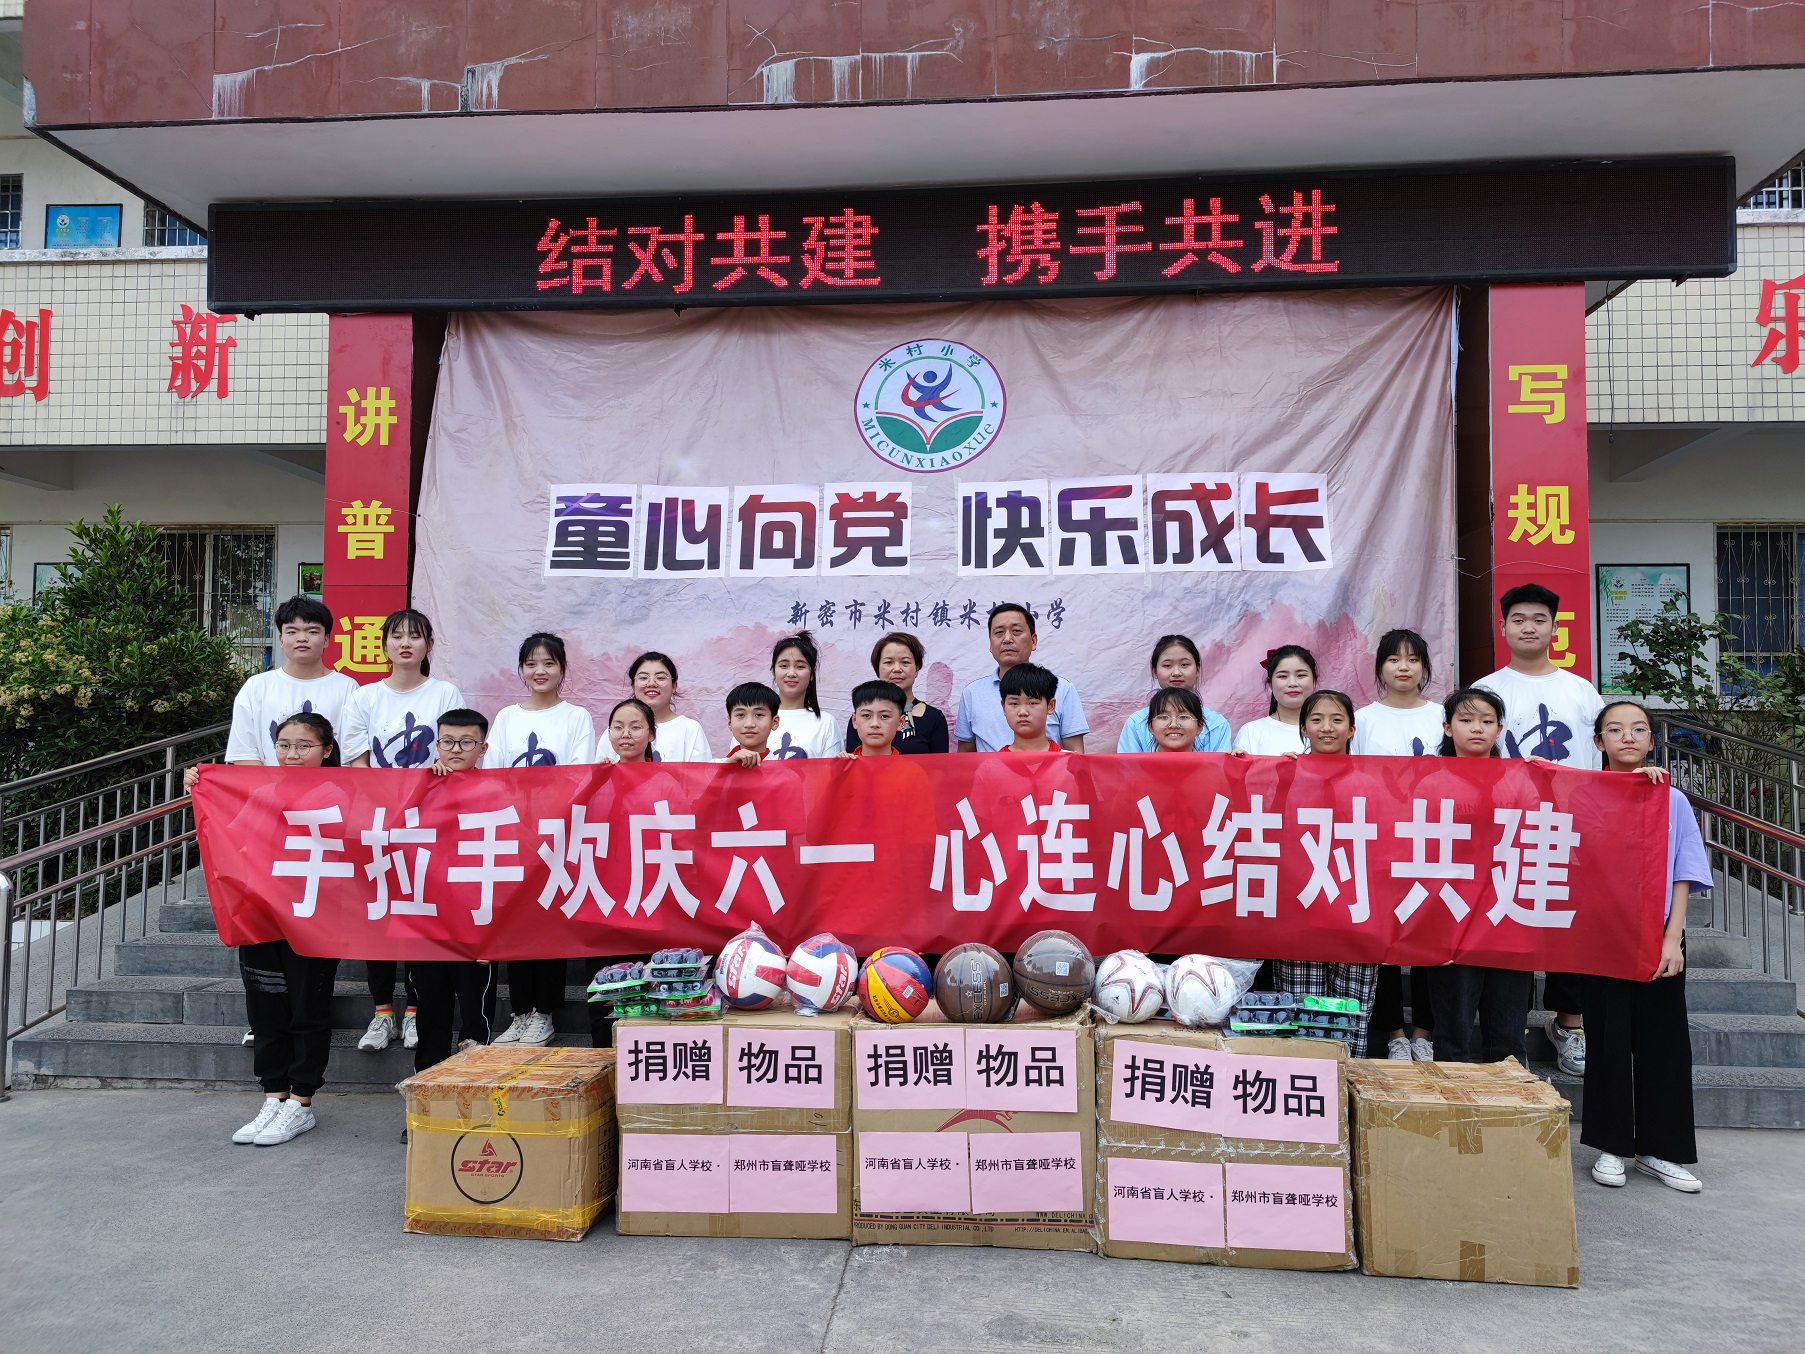 河南省盲人学校·郑州市盲聋哑学校为米村小学捐赠物品